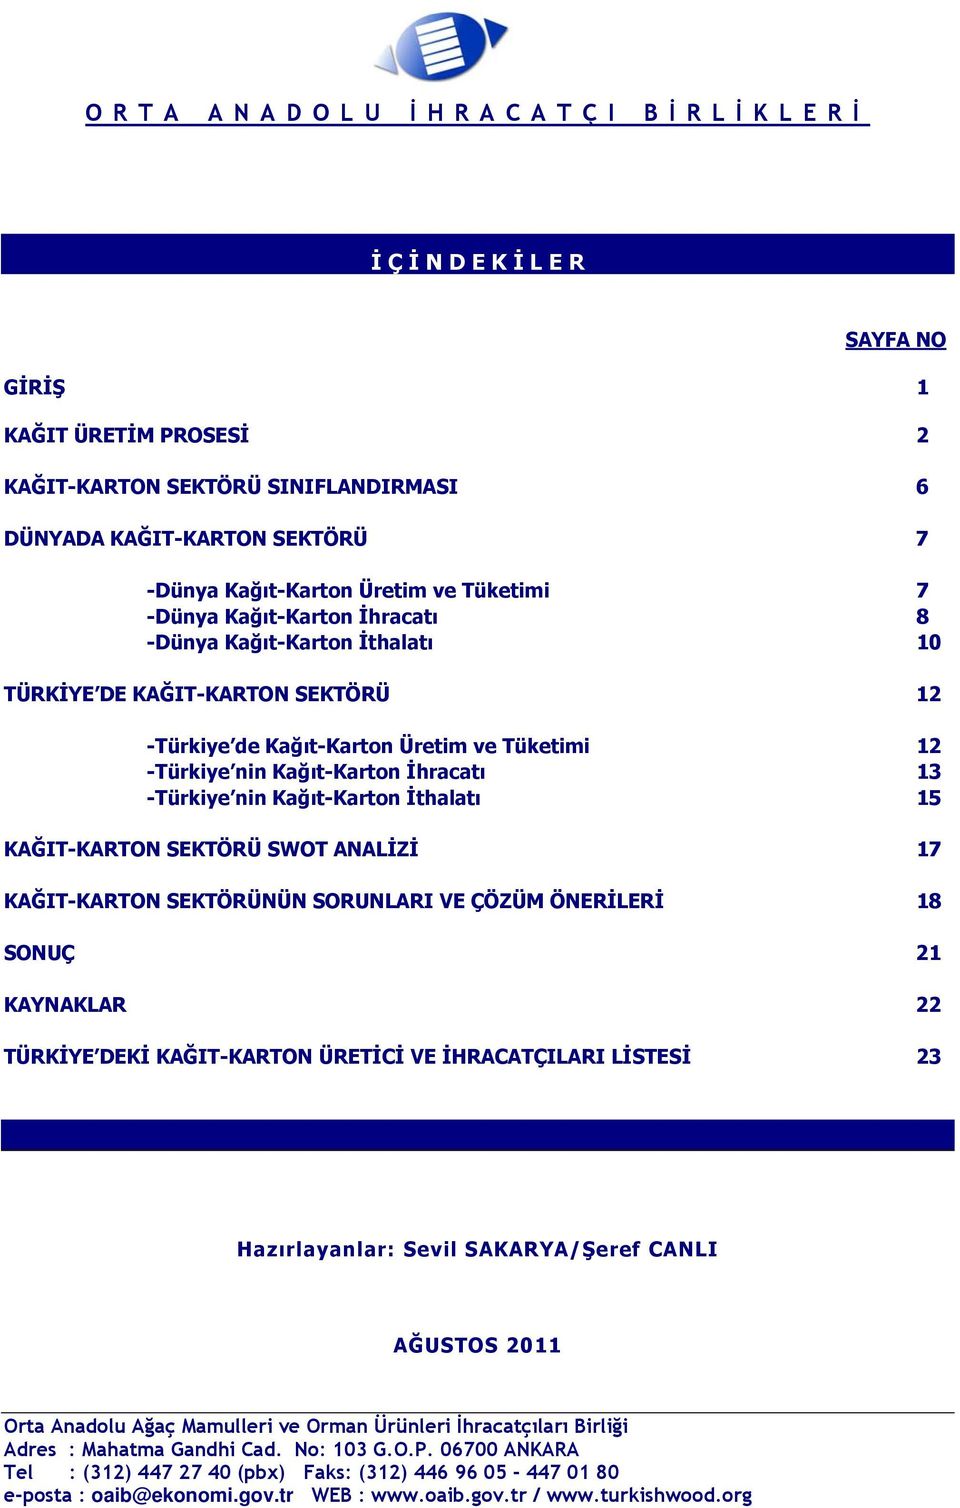 -Türkiye nin Kağıt-Karton İthalatı 15 KAĞIT-KARTON SEKTÖRÜ SWOT ANALİZİ 17 KAĞIT-KARTON SEKTÖRÜNÜN SORUNLARI VE ÇÖZÜM ÖNERİLERİ 18 SONUÇ 21 KAYNAKLAR 22 TÜRKİYE DEKİ KAĞIT-KARTON ÜRETİCİ VE